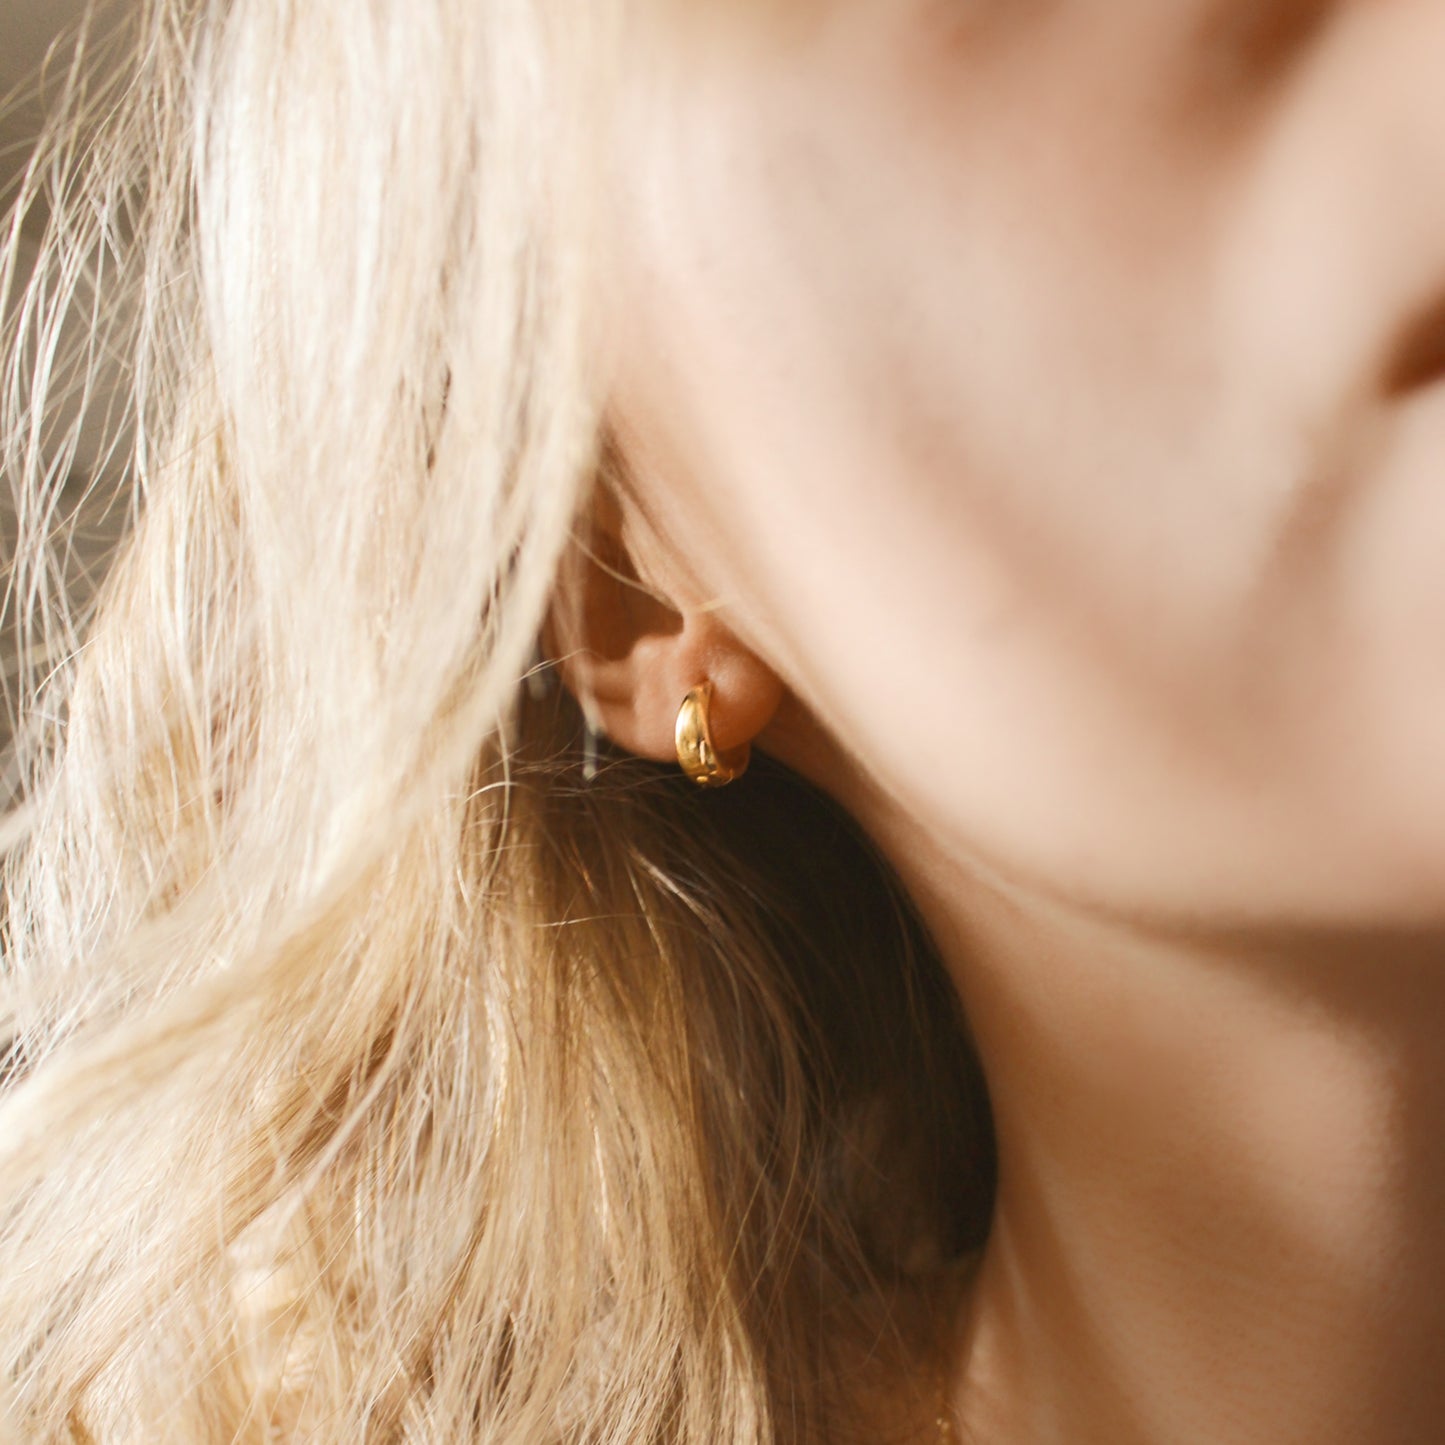 14kt gold hoops earrings in 12mm